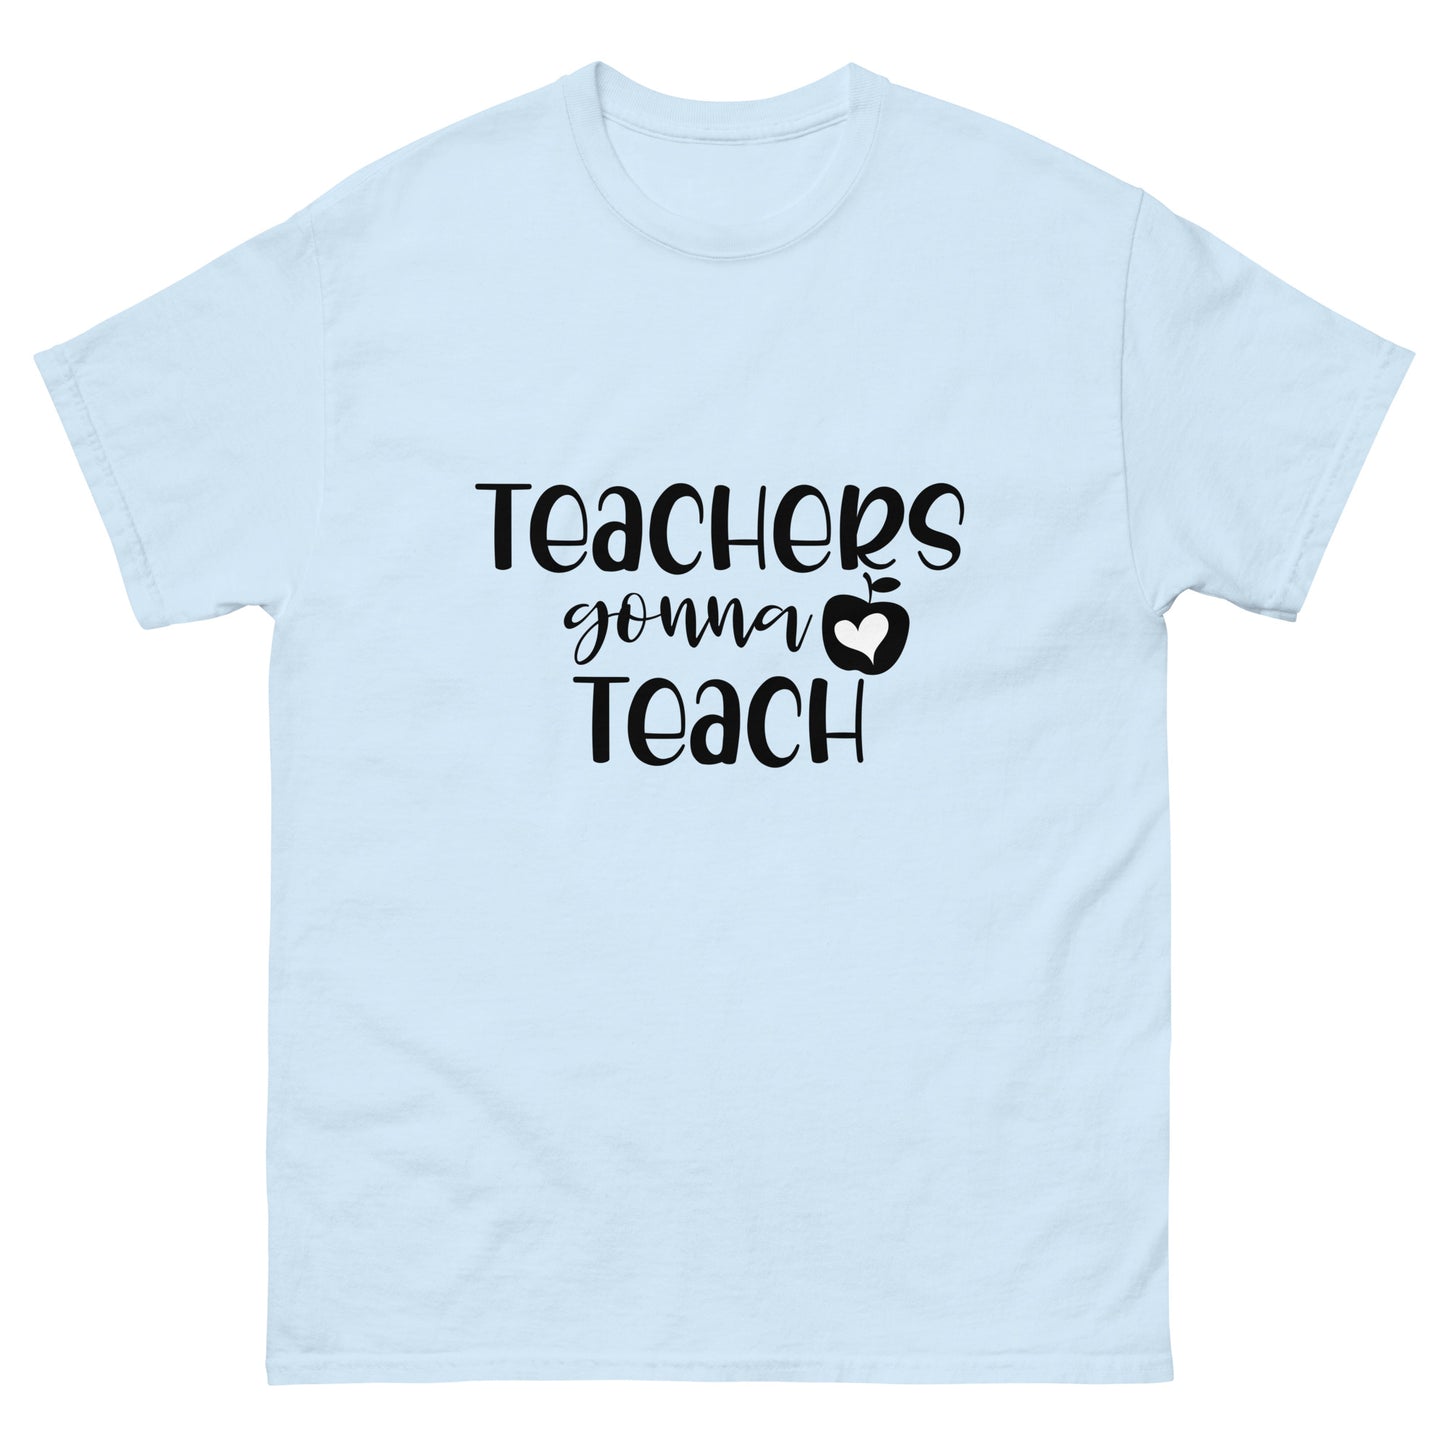 Teacher's Gonna Teach - classic tee